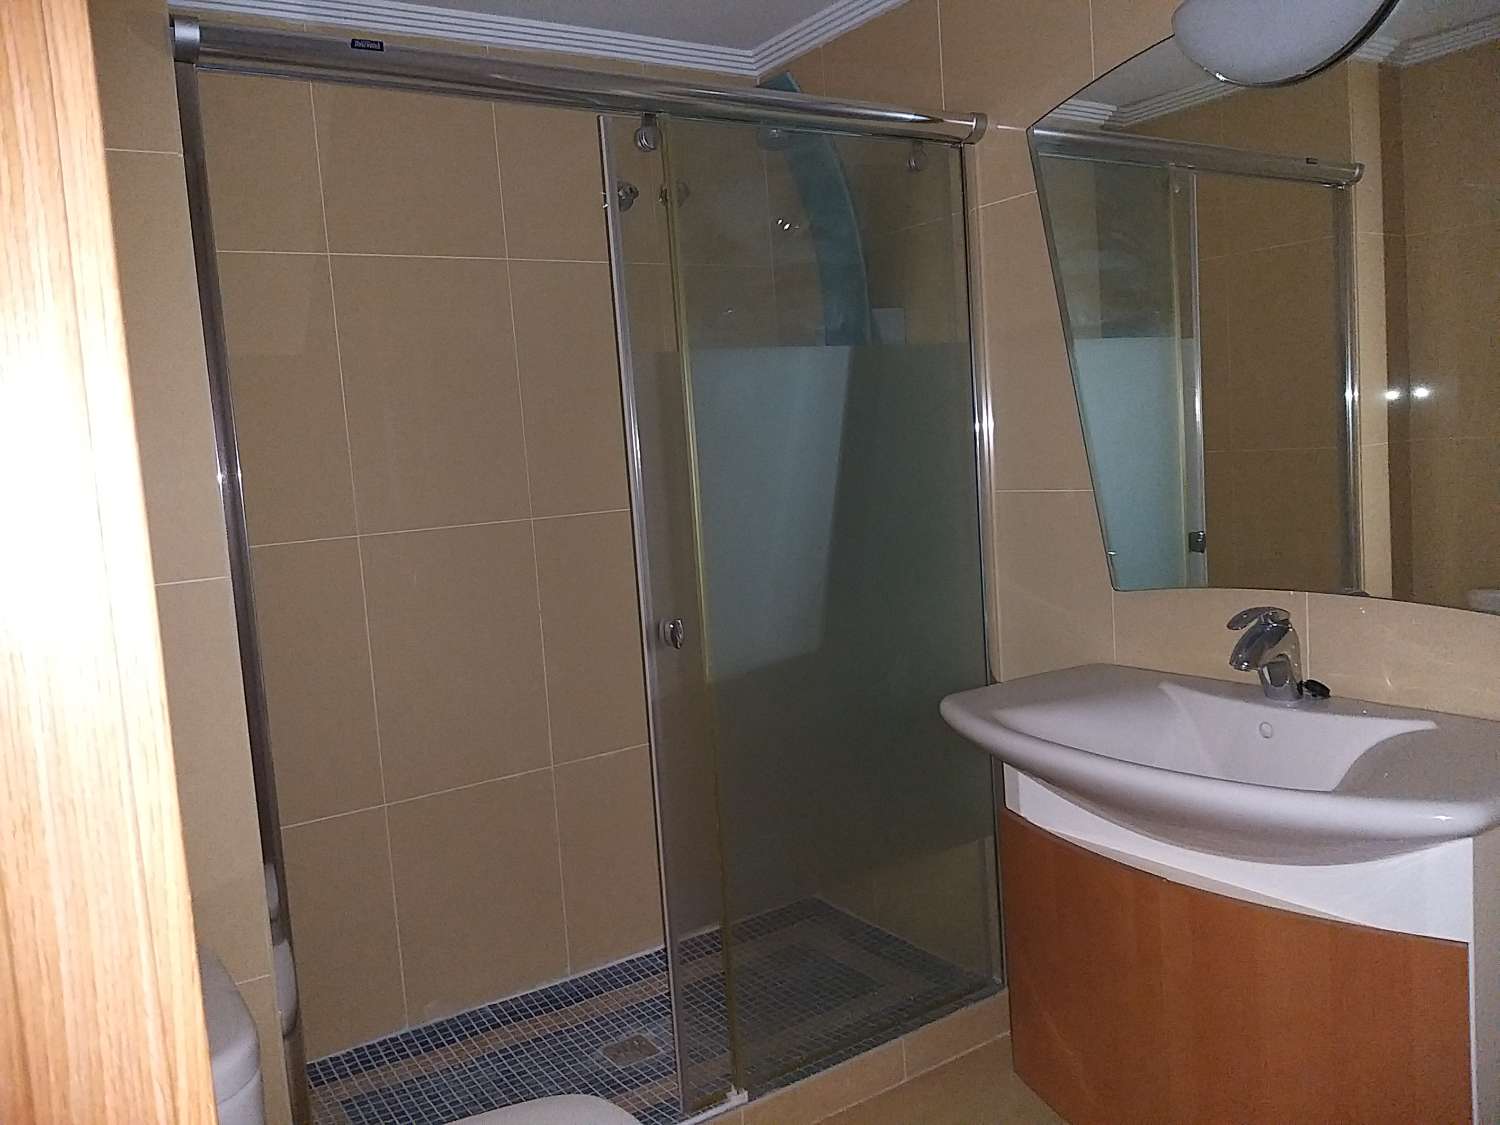 Apartment 3 bedrooms, 2 bathrooms, in Altea (Alicante)